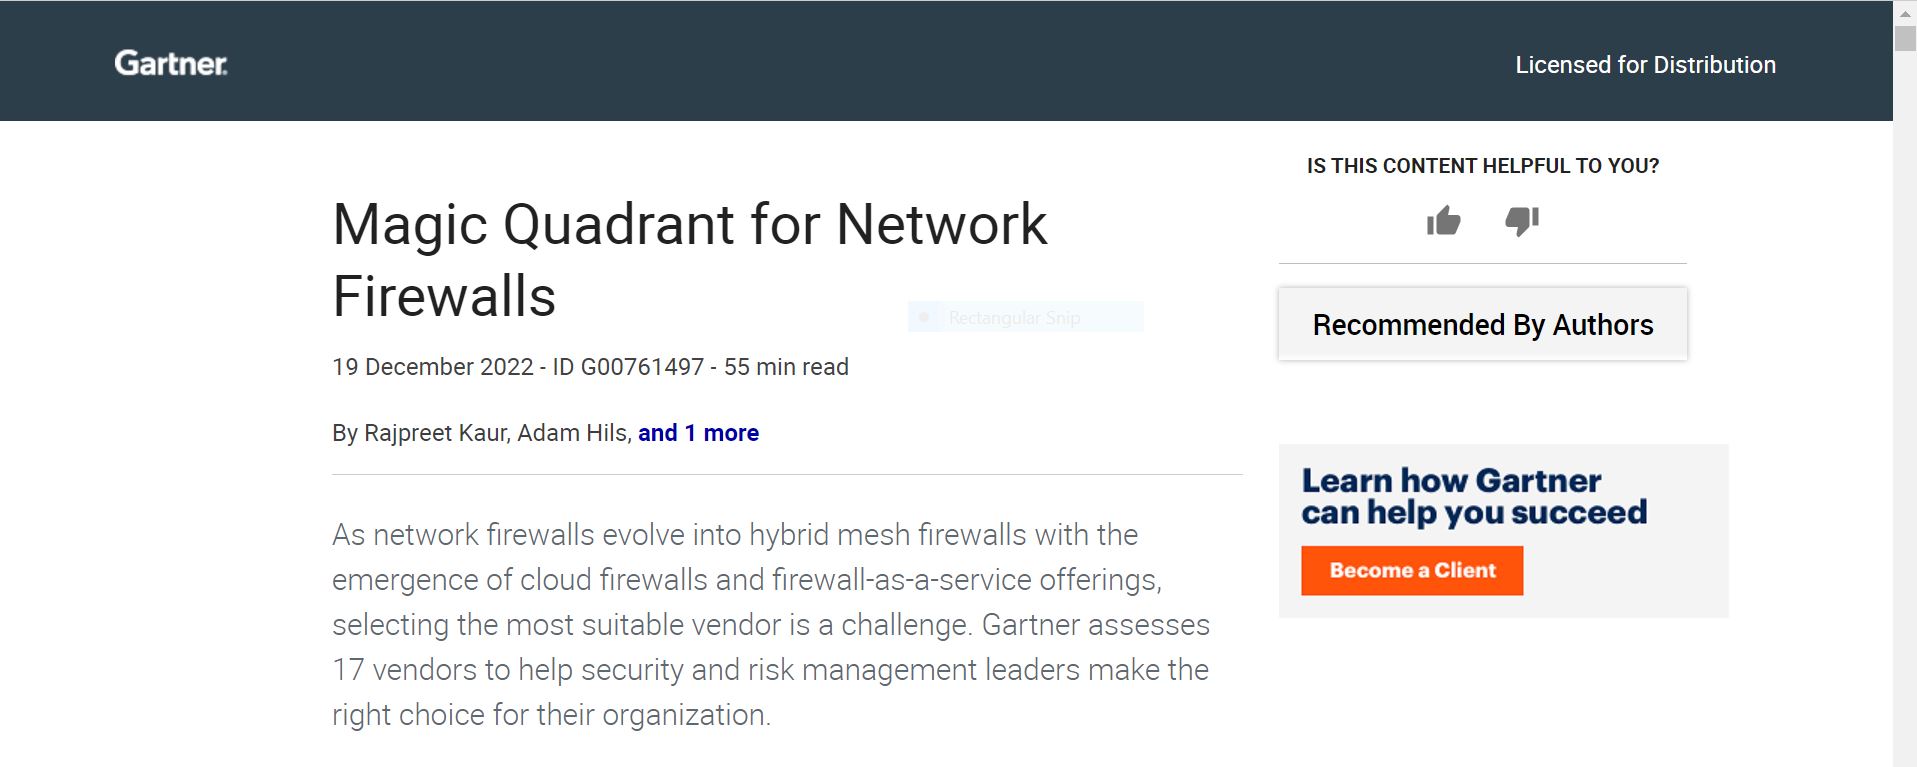 Network Firewall Innovation: Gartner Insights